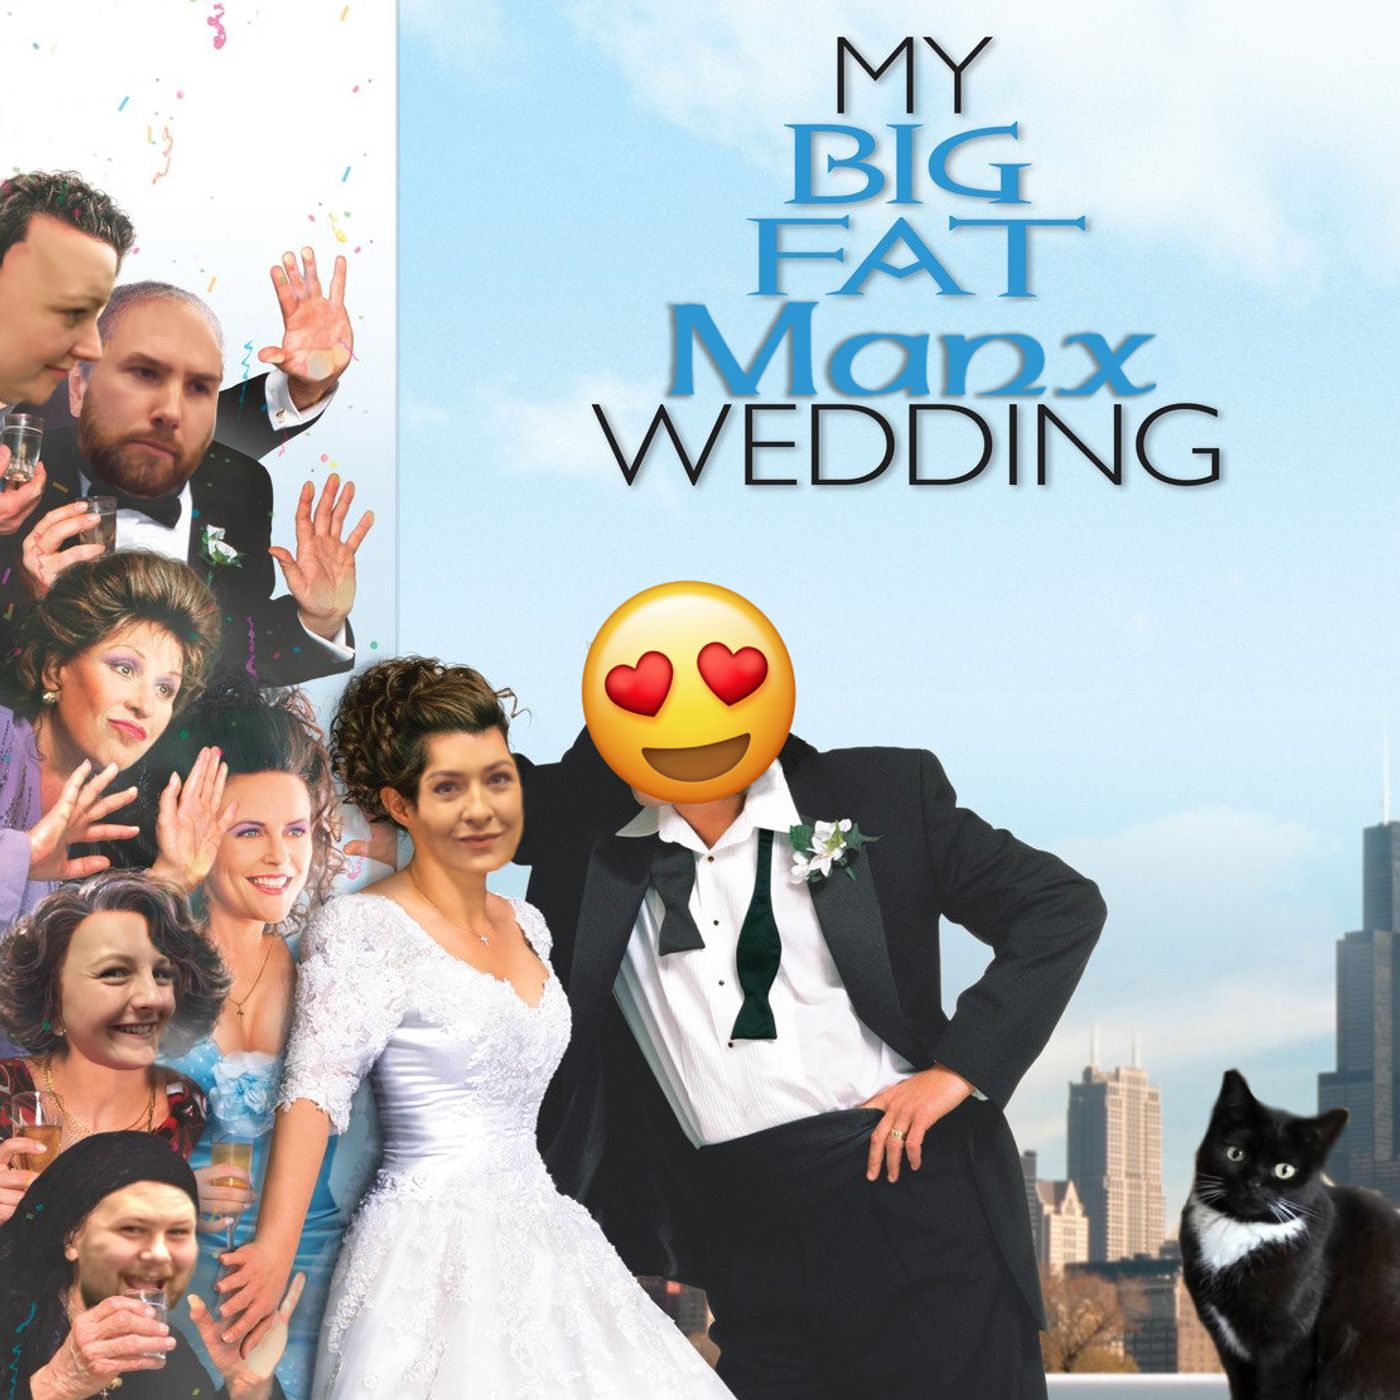 73: My big fat Manx wedding